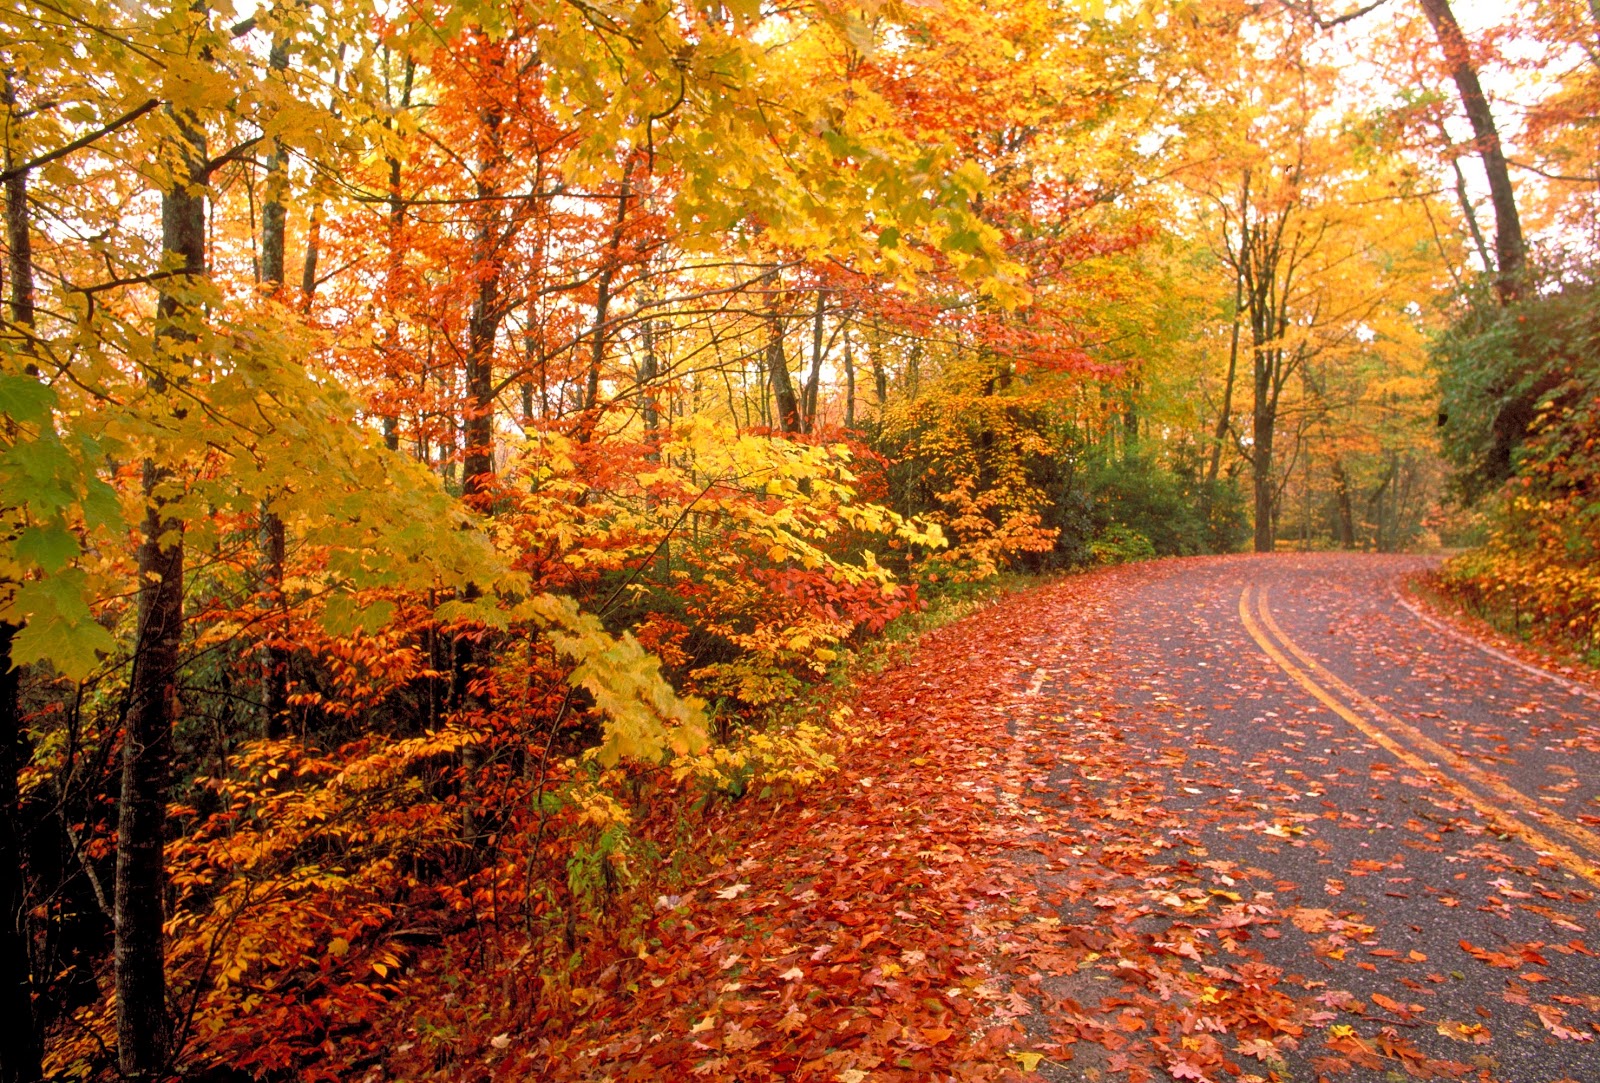 http://3.bp.blogspot.com/-ionlUf_a2uU/UGwsFFlkBNI/AAAAAAAAF-0/CHJMhE2tViQ/s1600/Fall+Leaves+Beautiful+Looking+Images.jpg